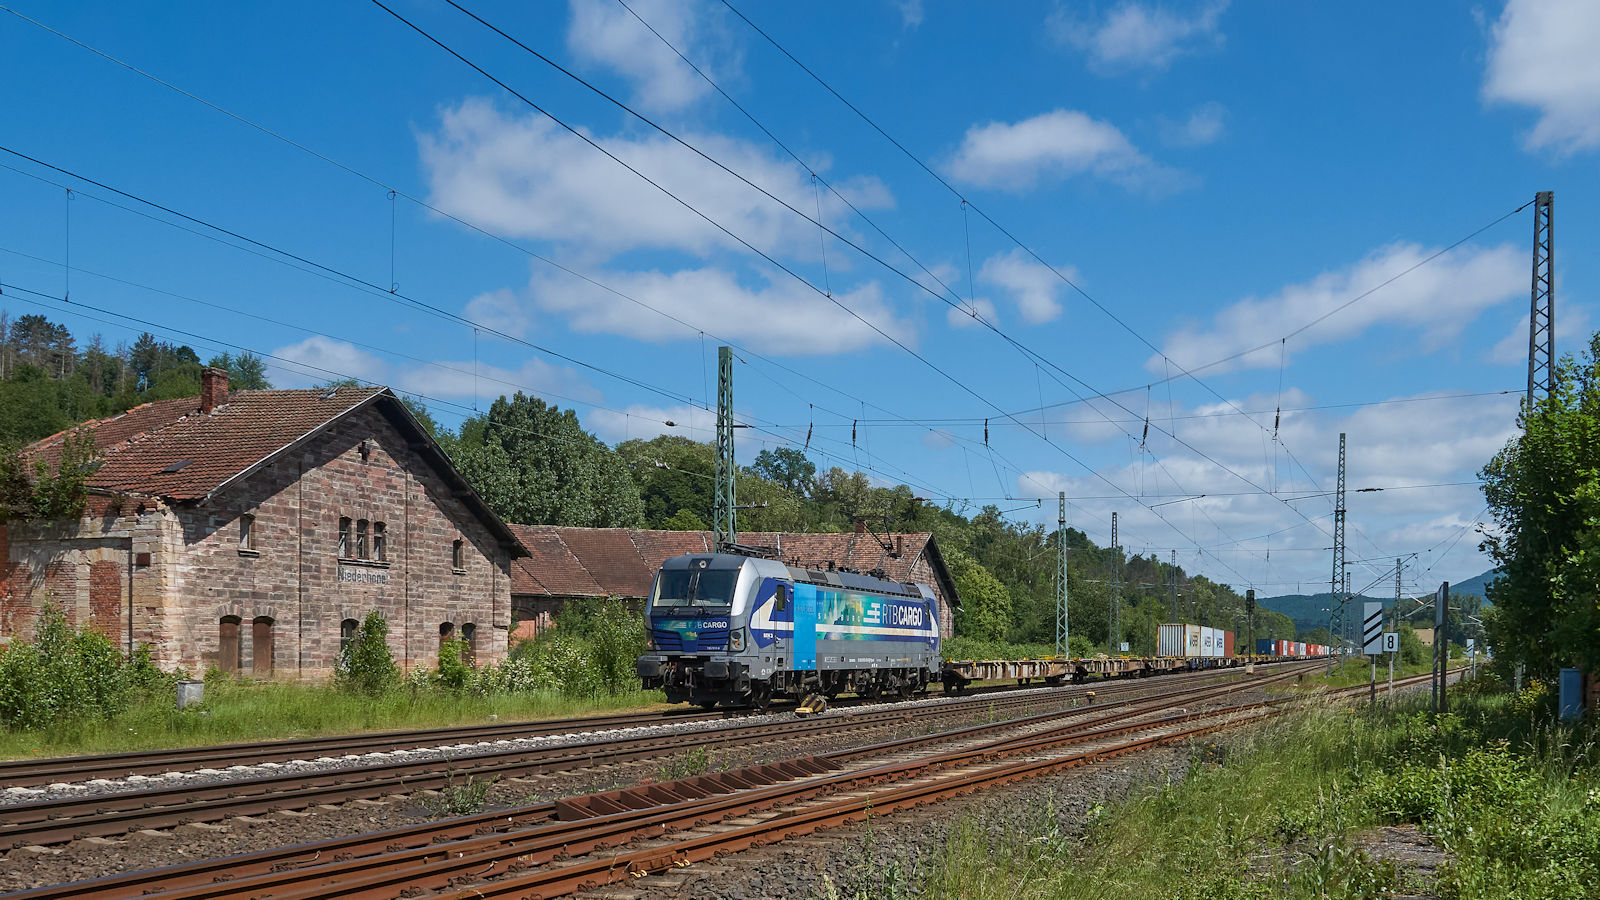 193 564 von RTB Cargo zog am 13.06.2021 einen Containerzug über die alte Nord-Süd-Strecke durch den ehemaligen Bahnhof Eschwege-West mit seinem historischen Ringlokschuppen. Dieser wurde 1875 erbaut und bis 1965 als Lokschuppen genutzt. Derzeit wird die Anlage restauriert.